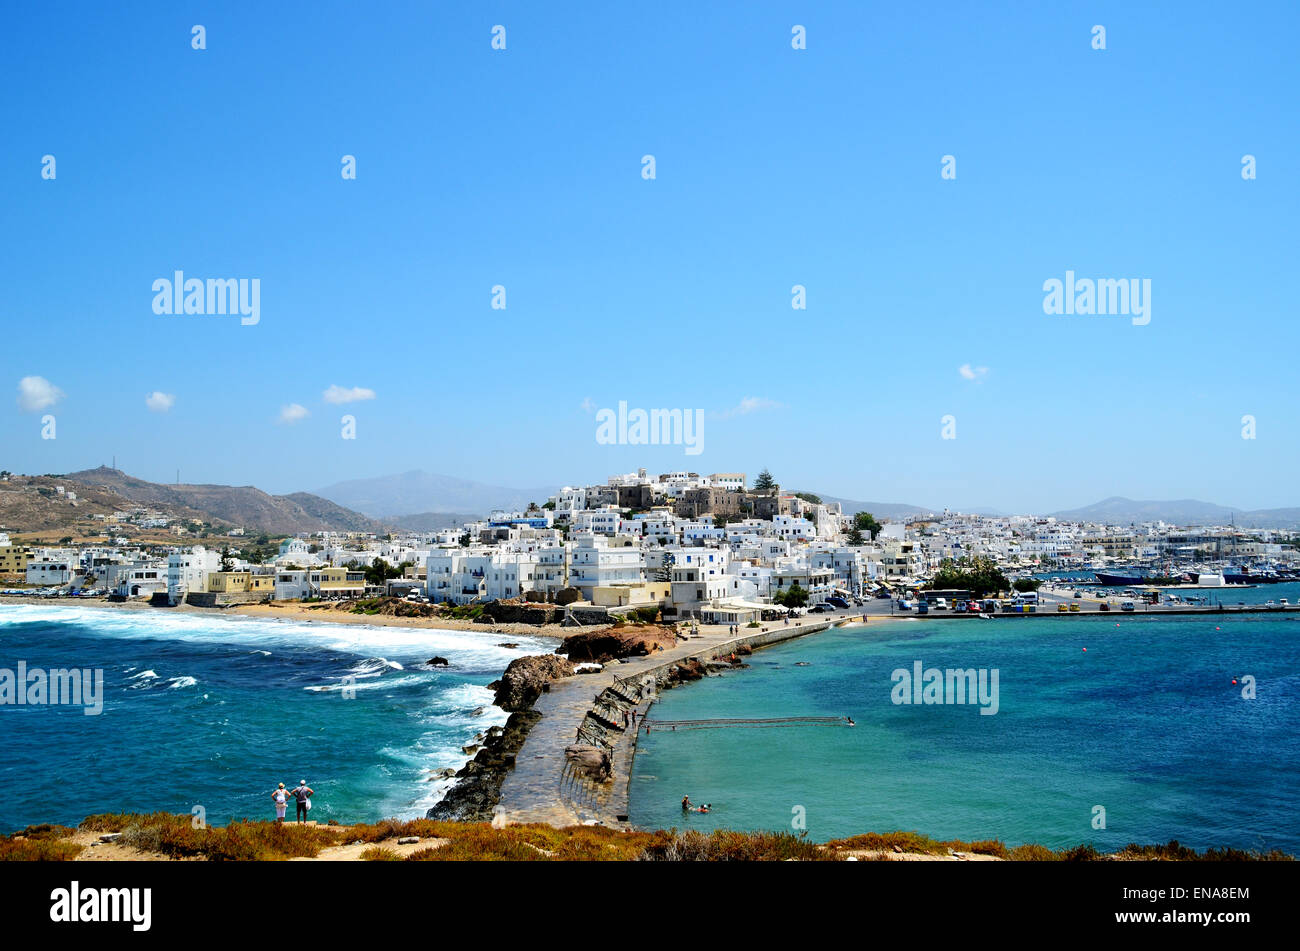 L'île de Naxos, l'île grecque de la mer Égée, vacances d'été,Naxos, Grèce, Cyclades, l'île grecque, mer, voyages, Mer Égée, architecture Banque D'Images